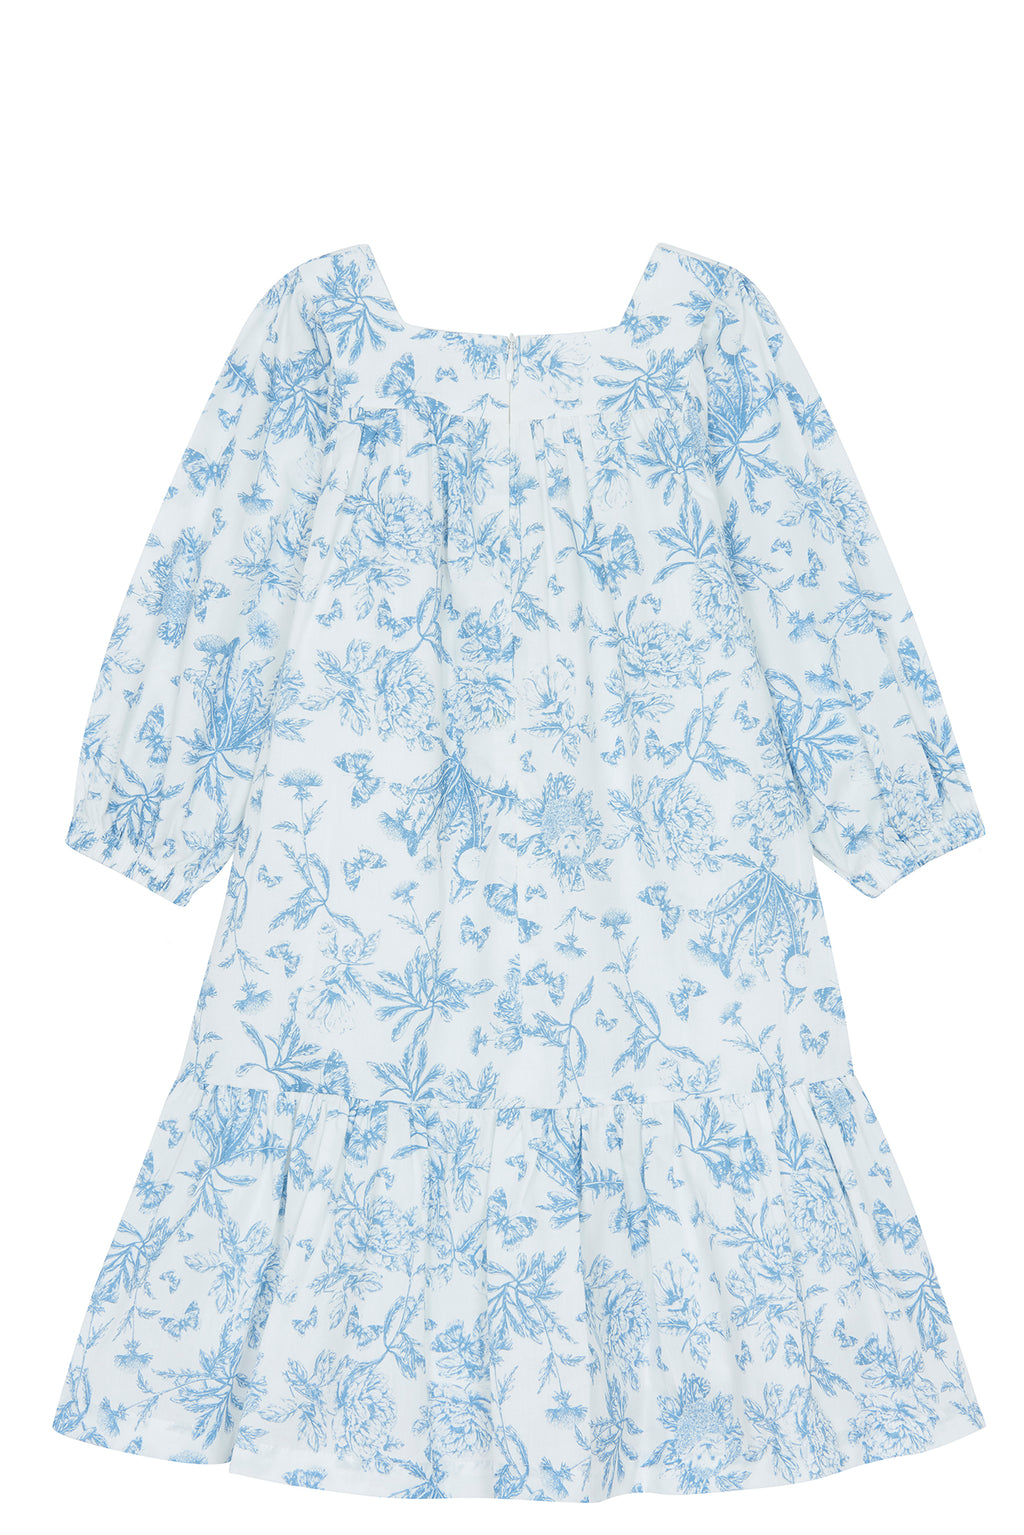 Dress - Blue Print inspiration Toile de jouy